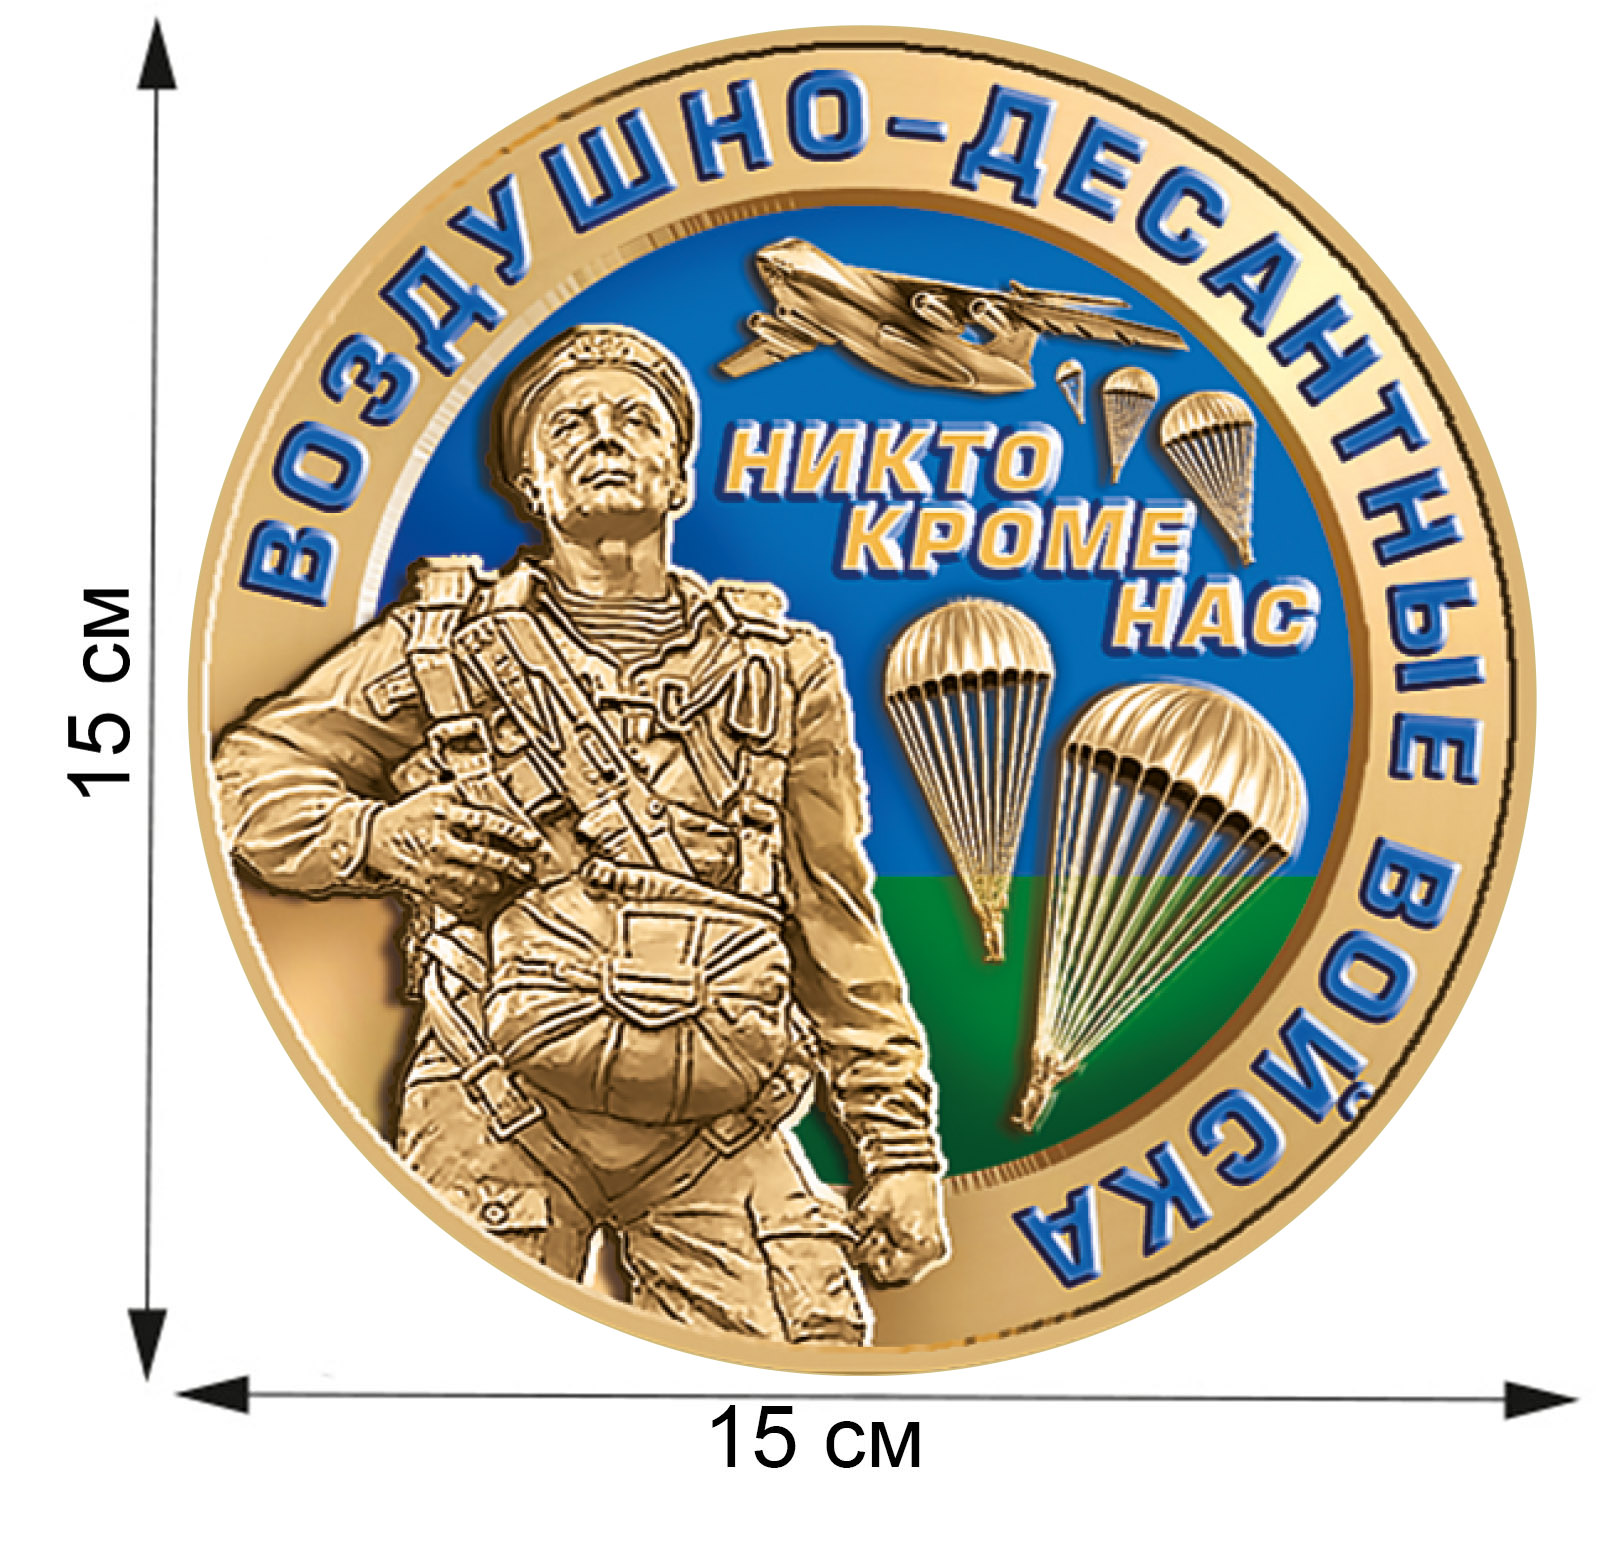 Заказать наклейки в виде медали Воздушно-десантных войск с доставкой